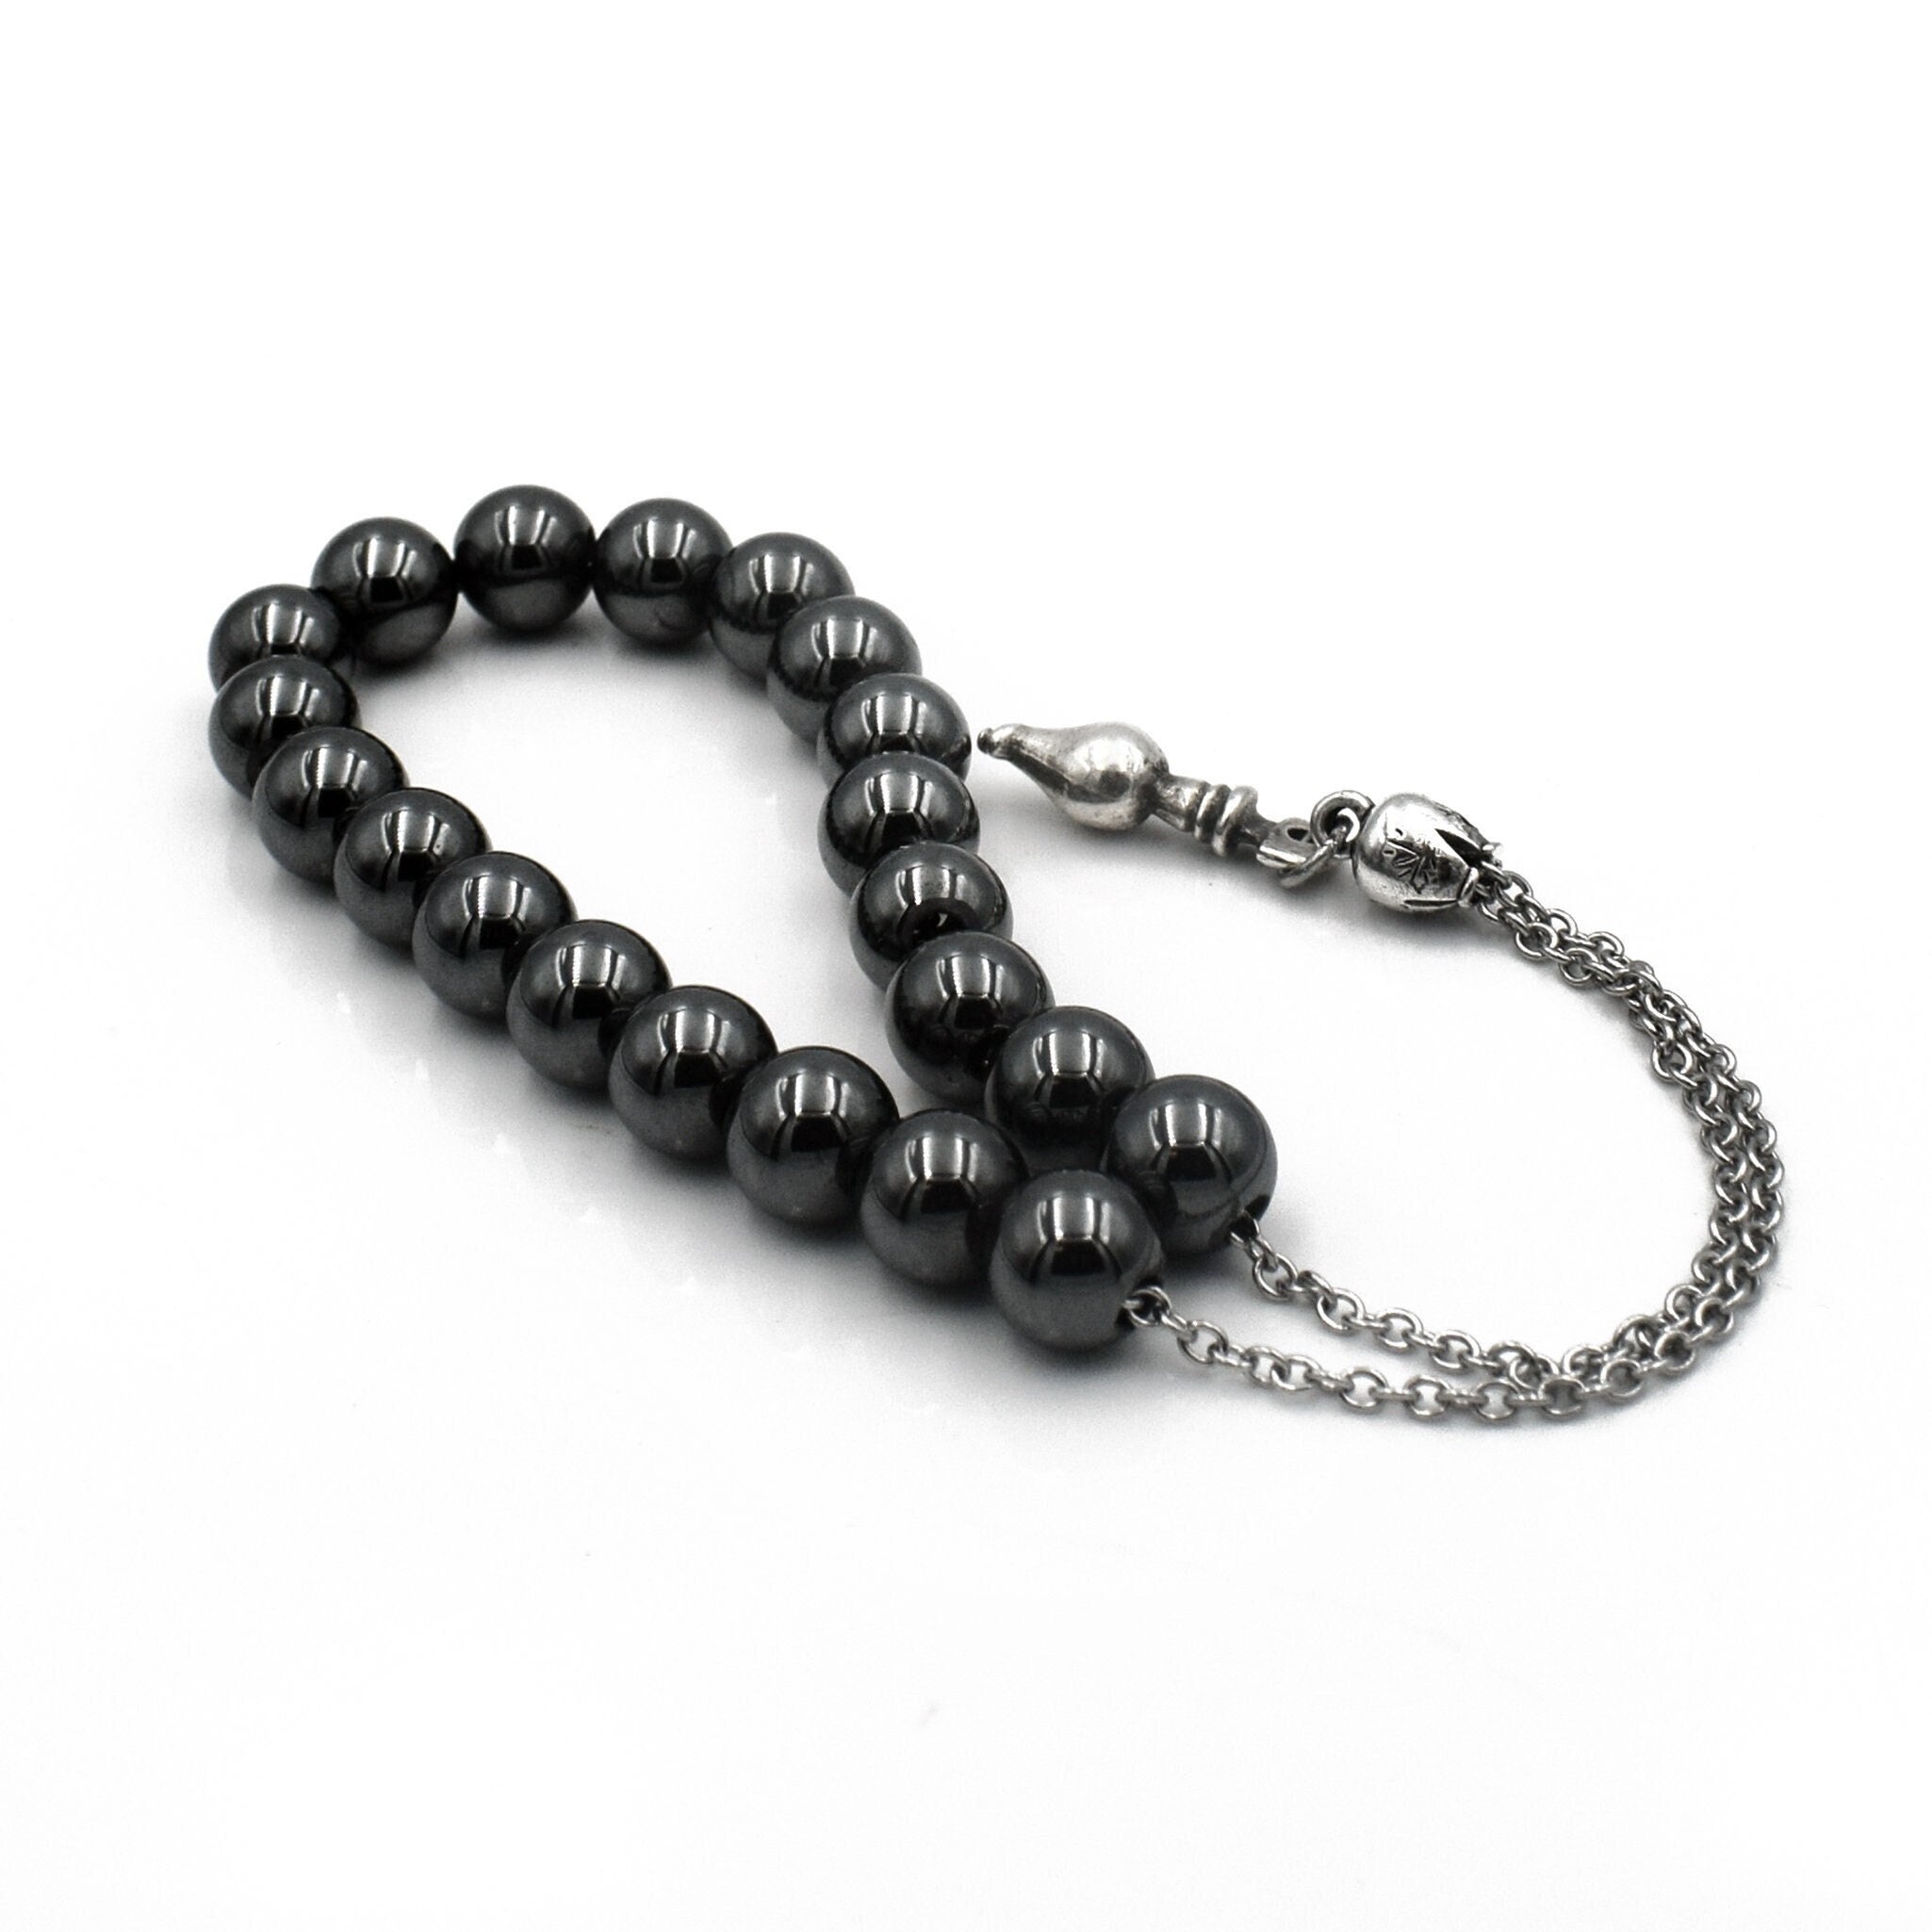 Fidget Jewelry Worry Beads Komboloi Greek Worry Beads Meditation Prayer  Beads Anxiety Stress Bracelet Anxiety Relief Fidget Toy 